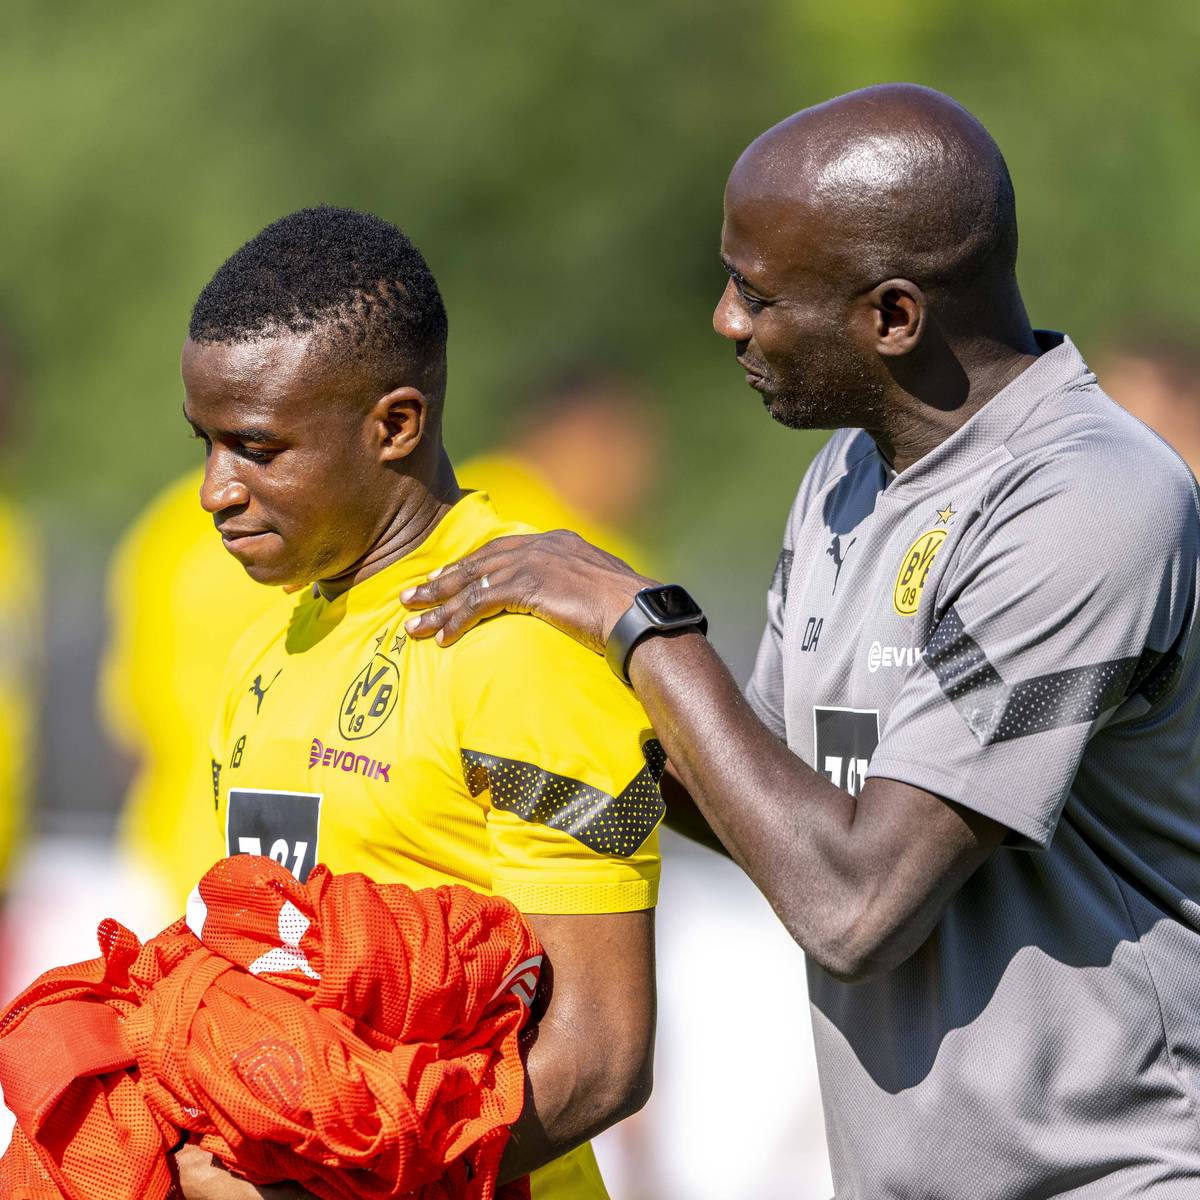 Borussia Dortmund legt ein verstärktes Augenmerk auf die Entwicklung der Nachwuchsspieler. Talente-Trainer Otto Addo werden dafür wohl zwei Assistenten an die Seite gestellt.  